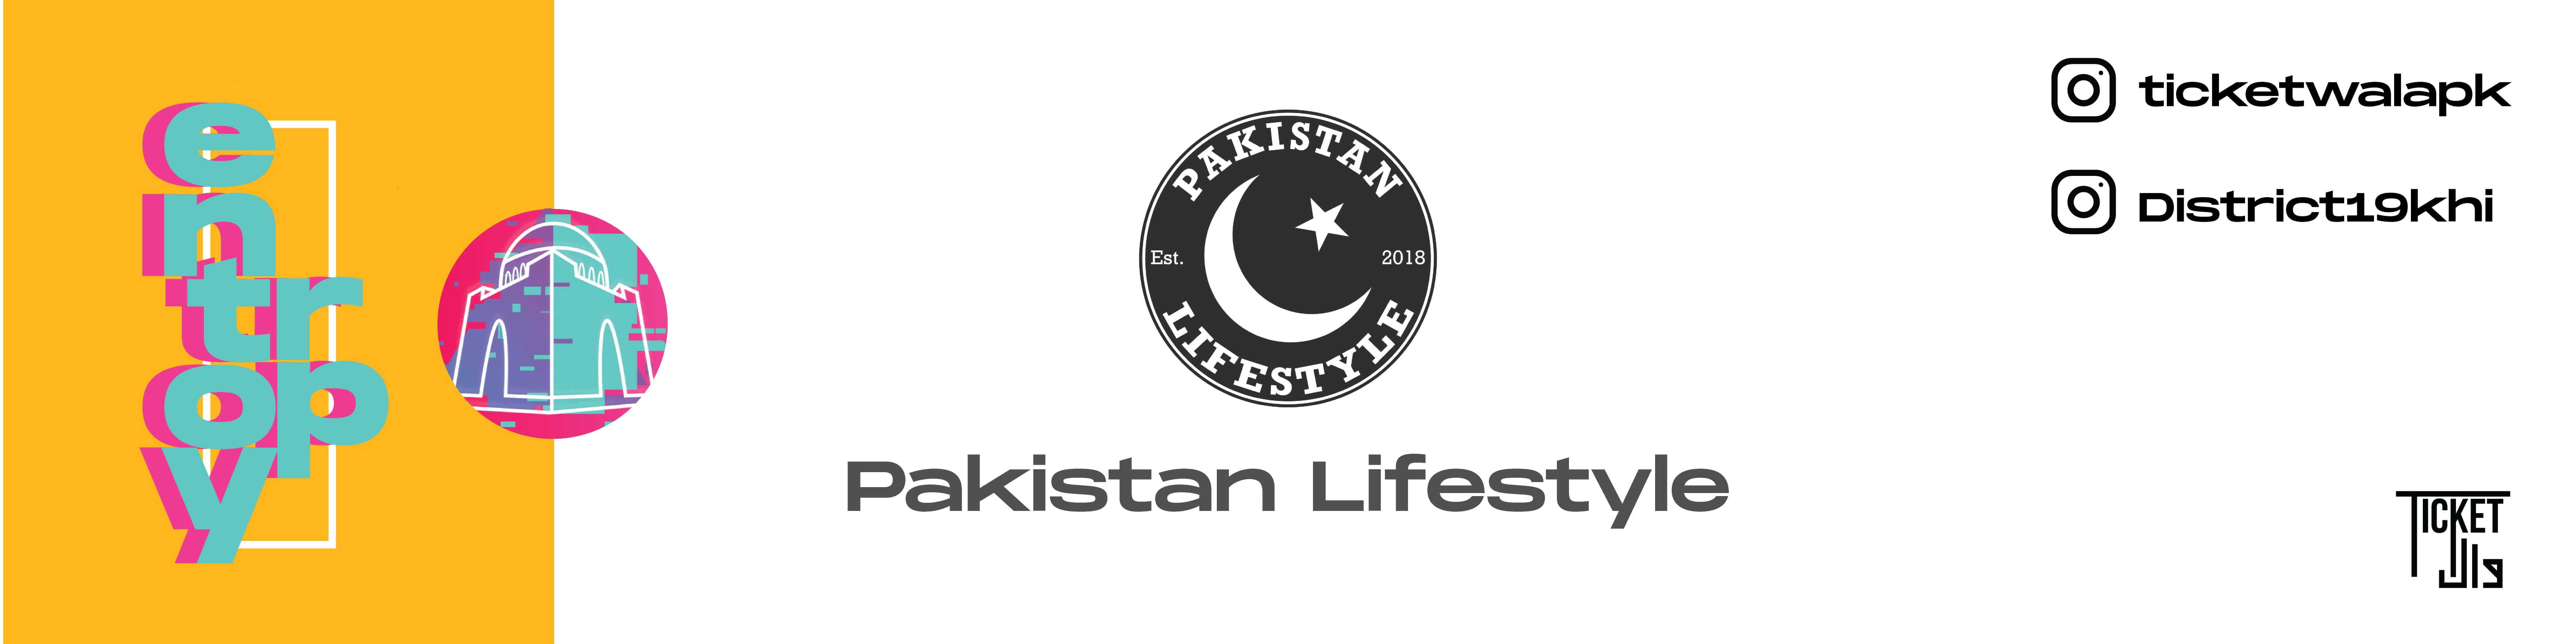 Pakistan-Lifestyle-min